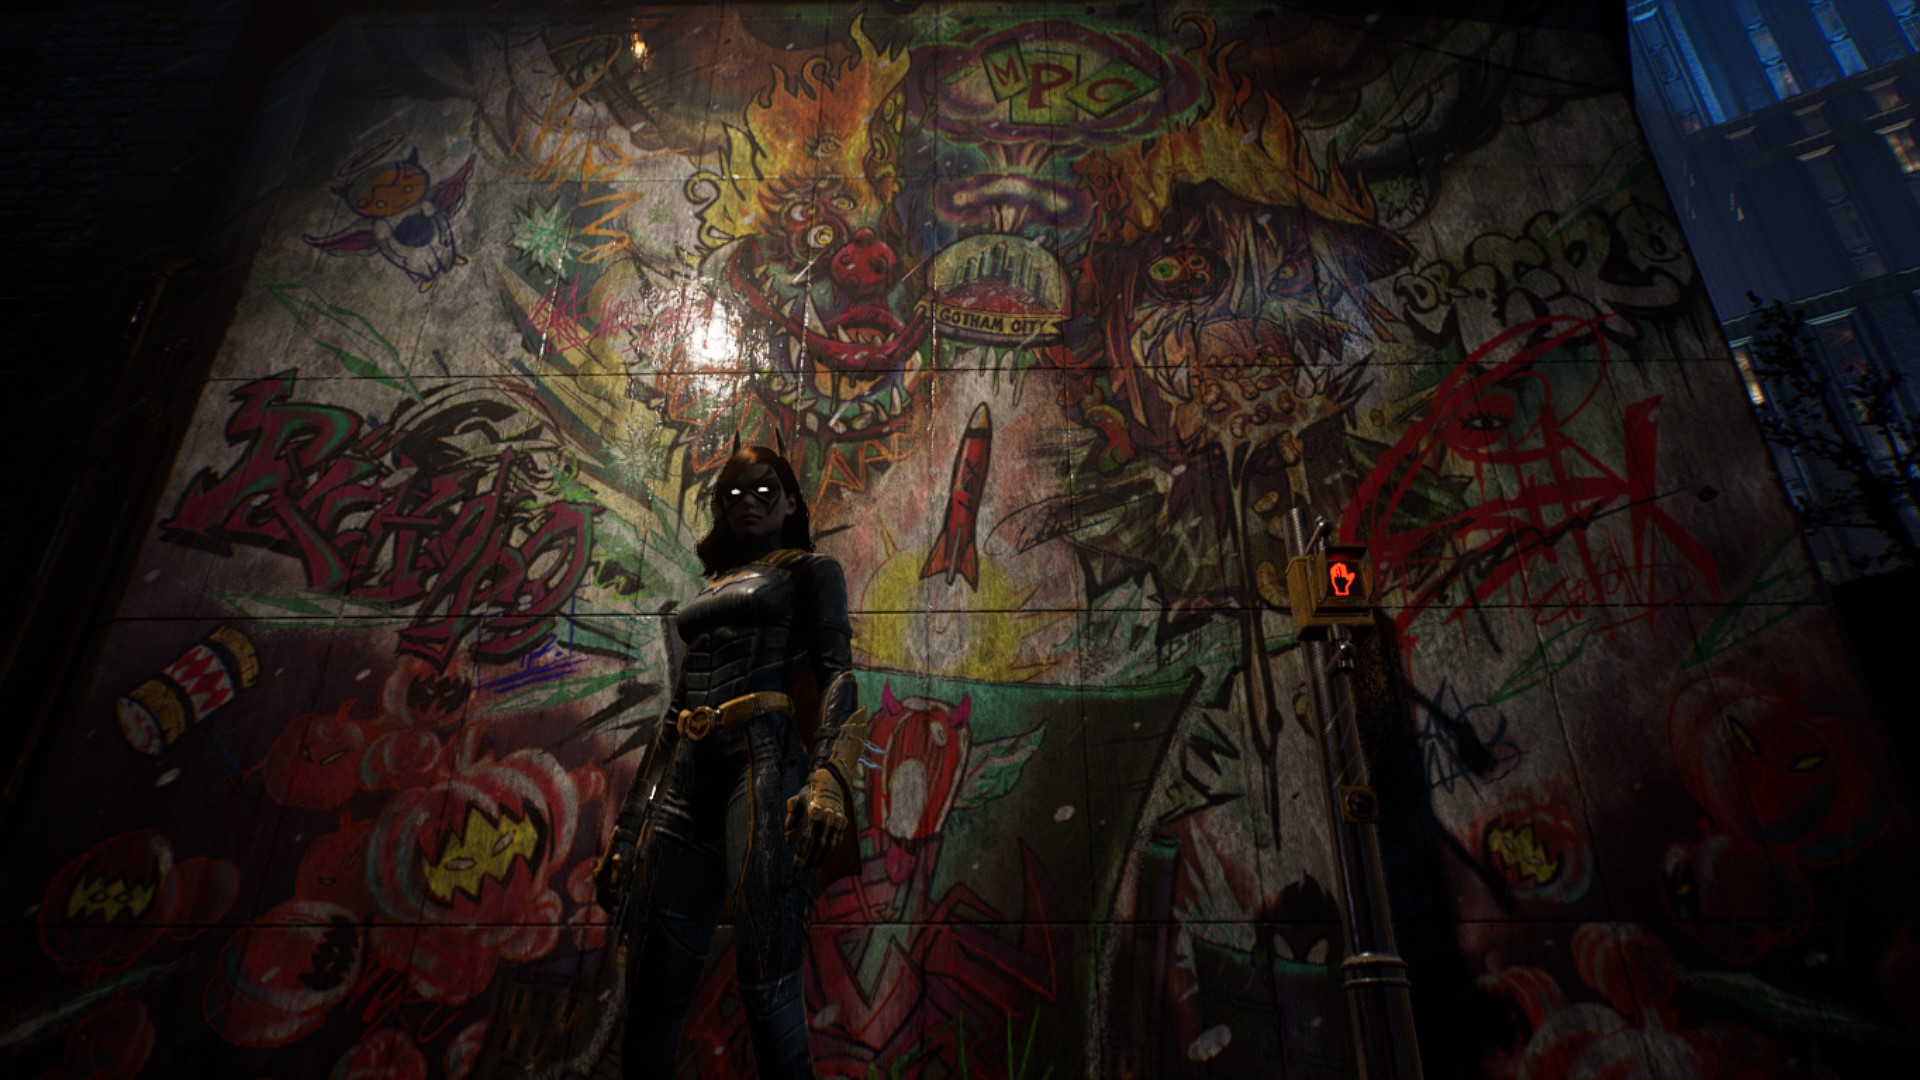 Gotham Knights graffiti - Origin of Evil mural